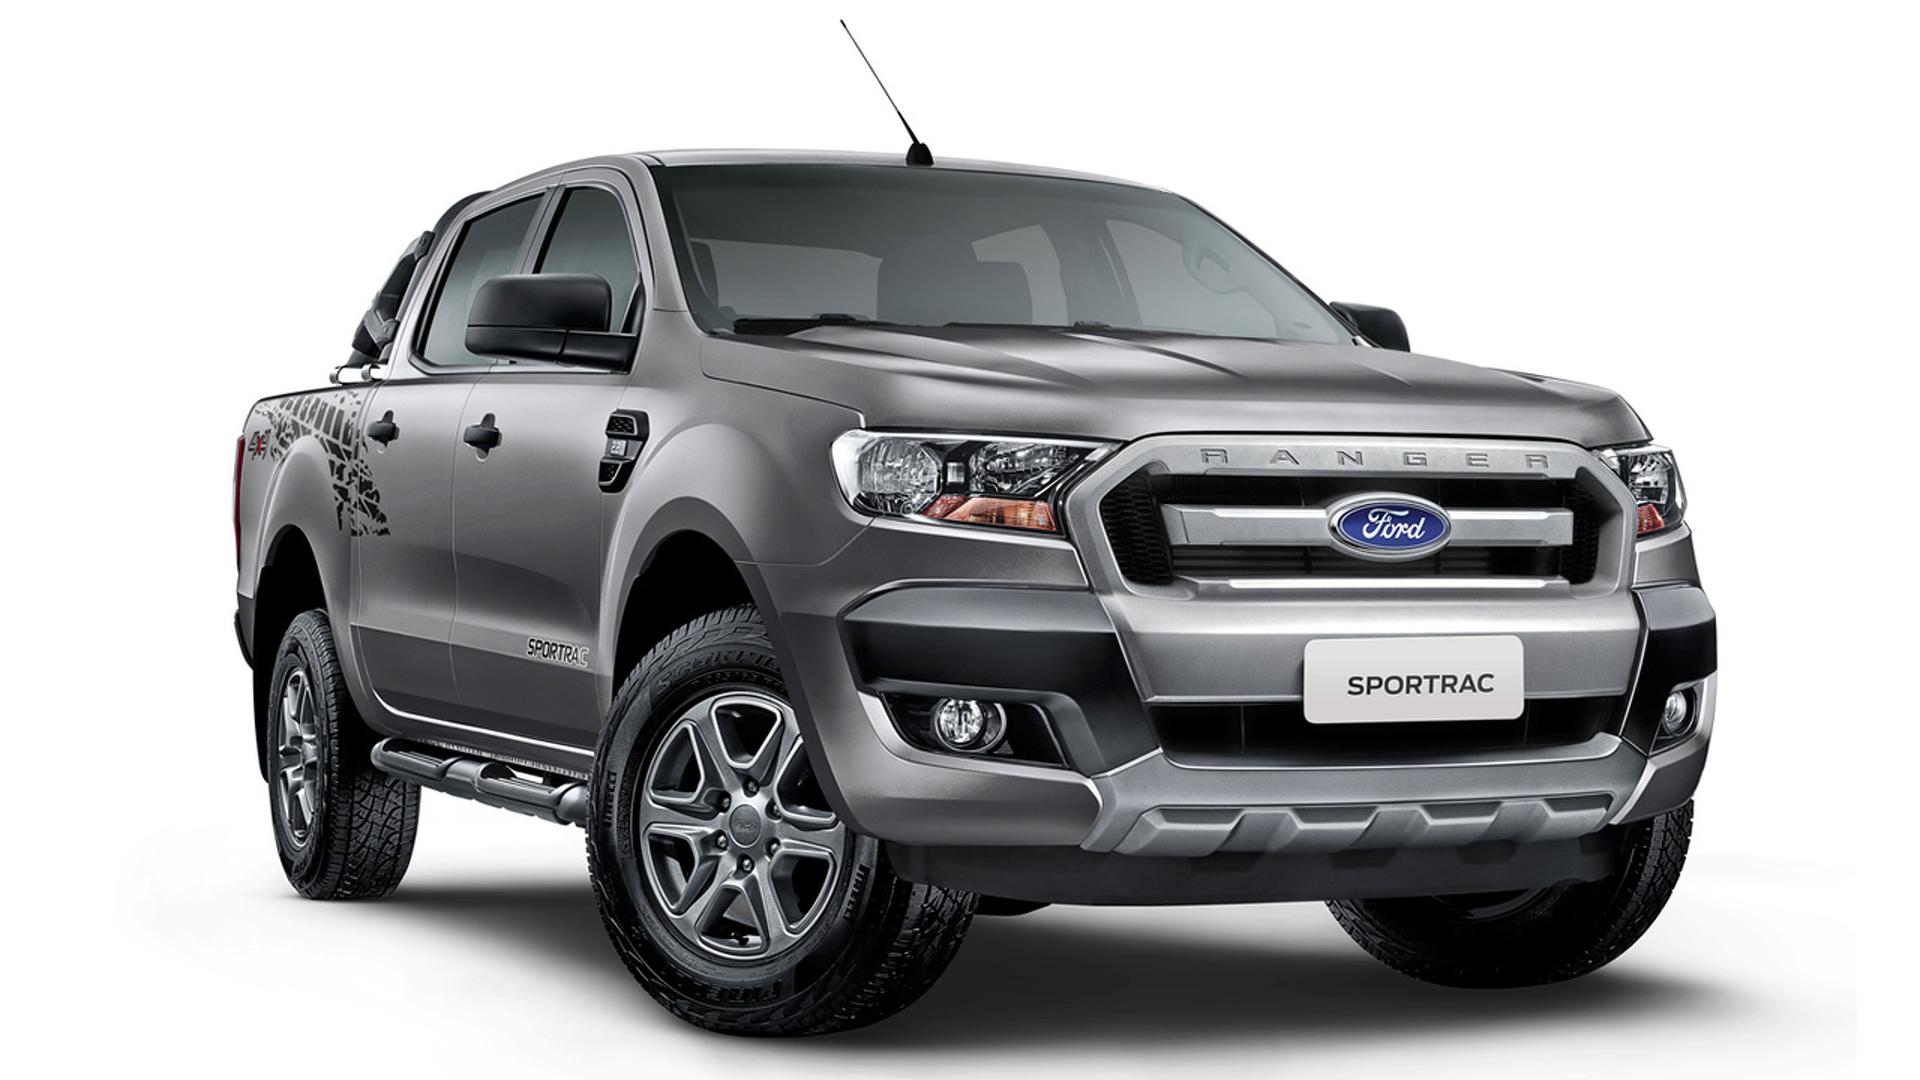 Ford Ranger Chega Ao Mercado Vers O Diesel Mais